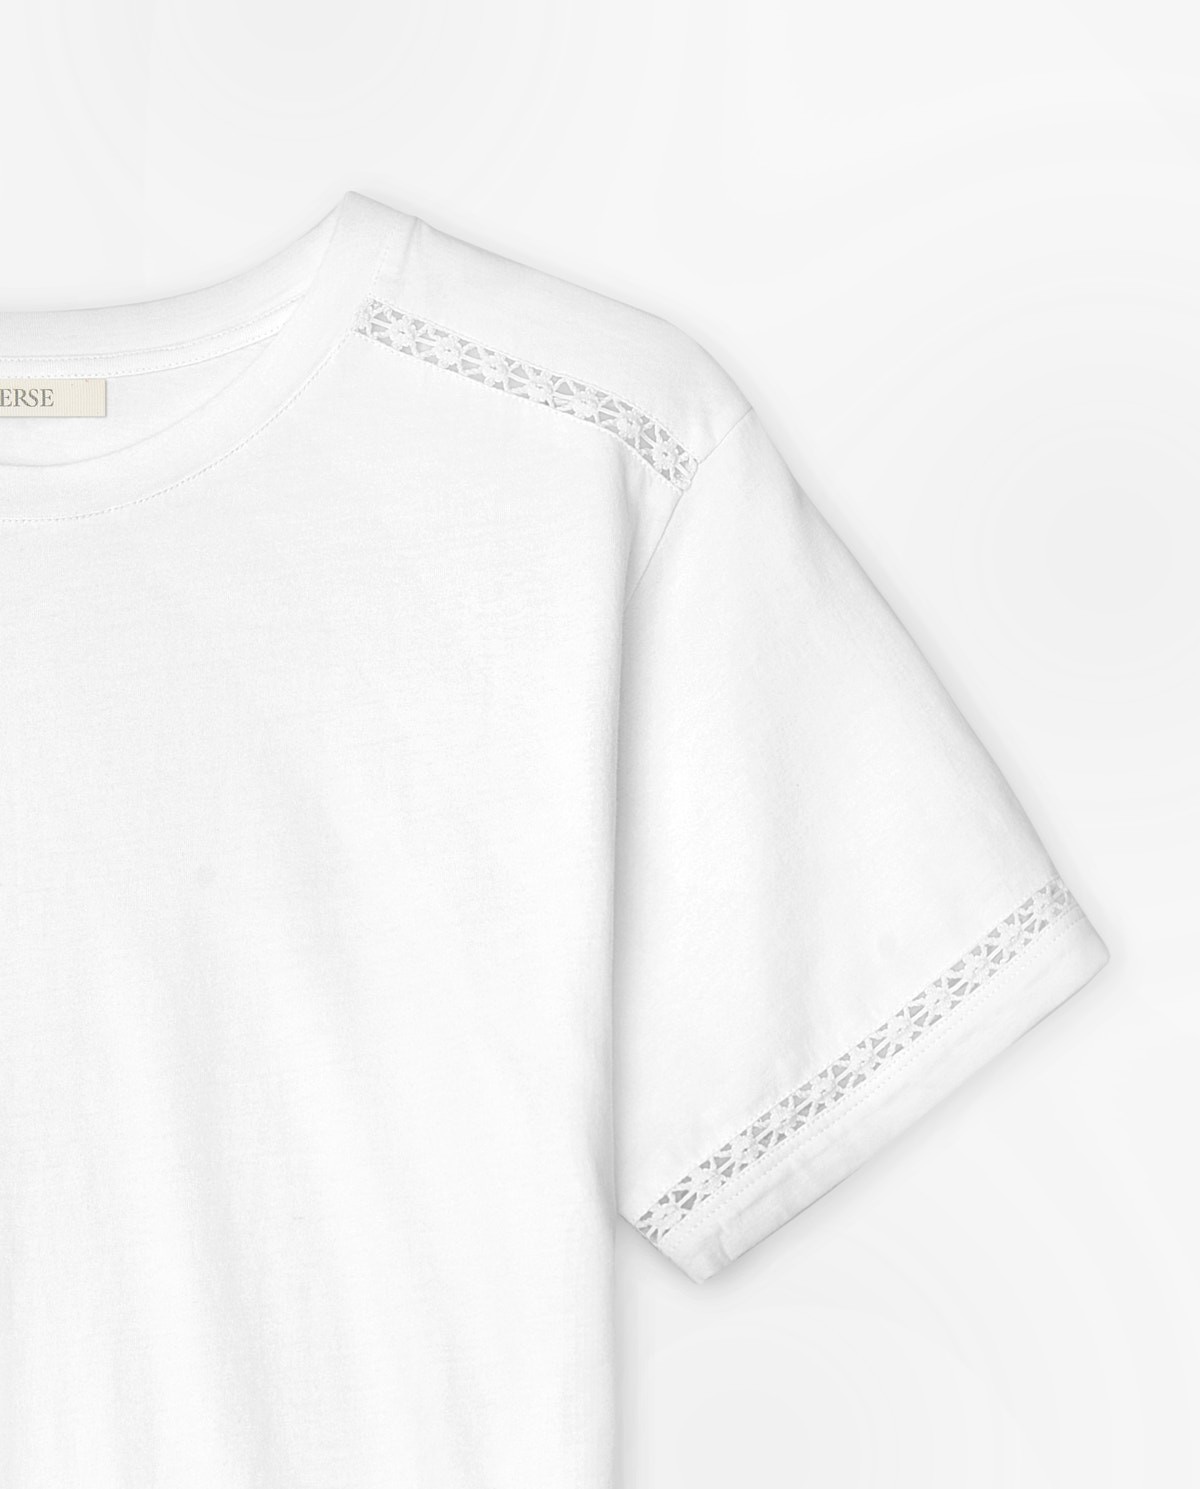 Cotton t-shirt decorative stitching White 6